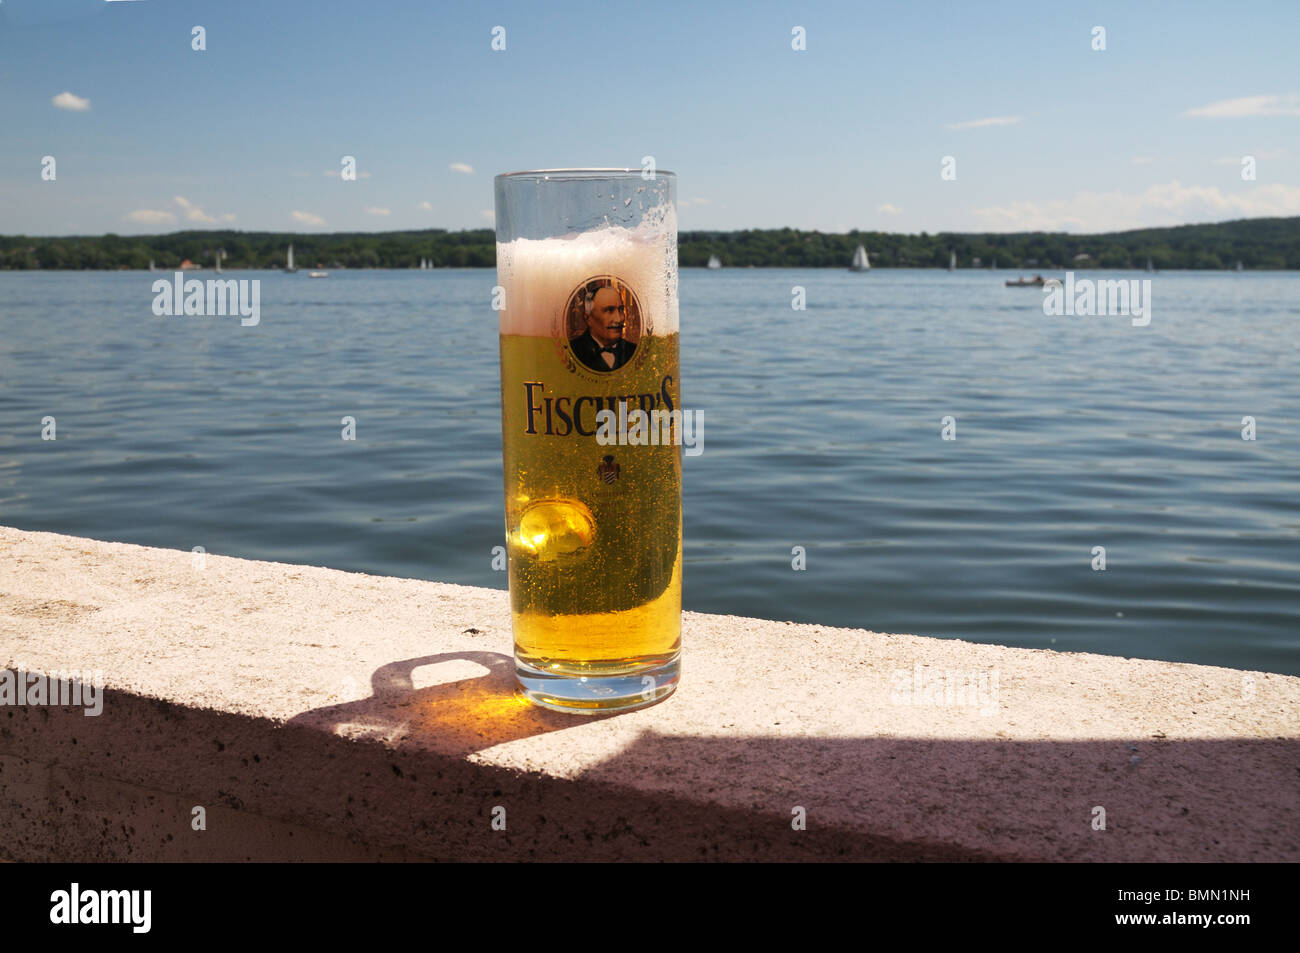 Mezzo litro di Fischer bier a Starnberg, Baviera, Germania Foto Stock